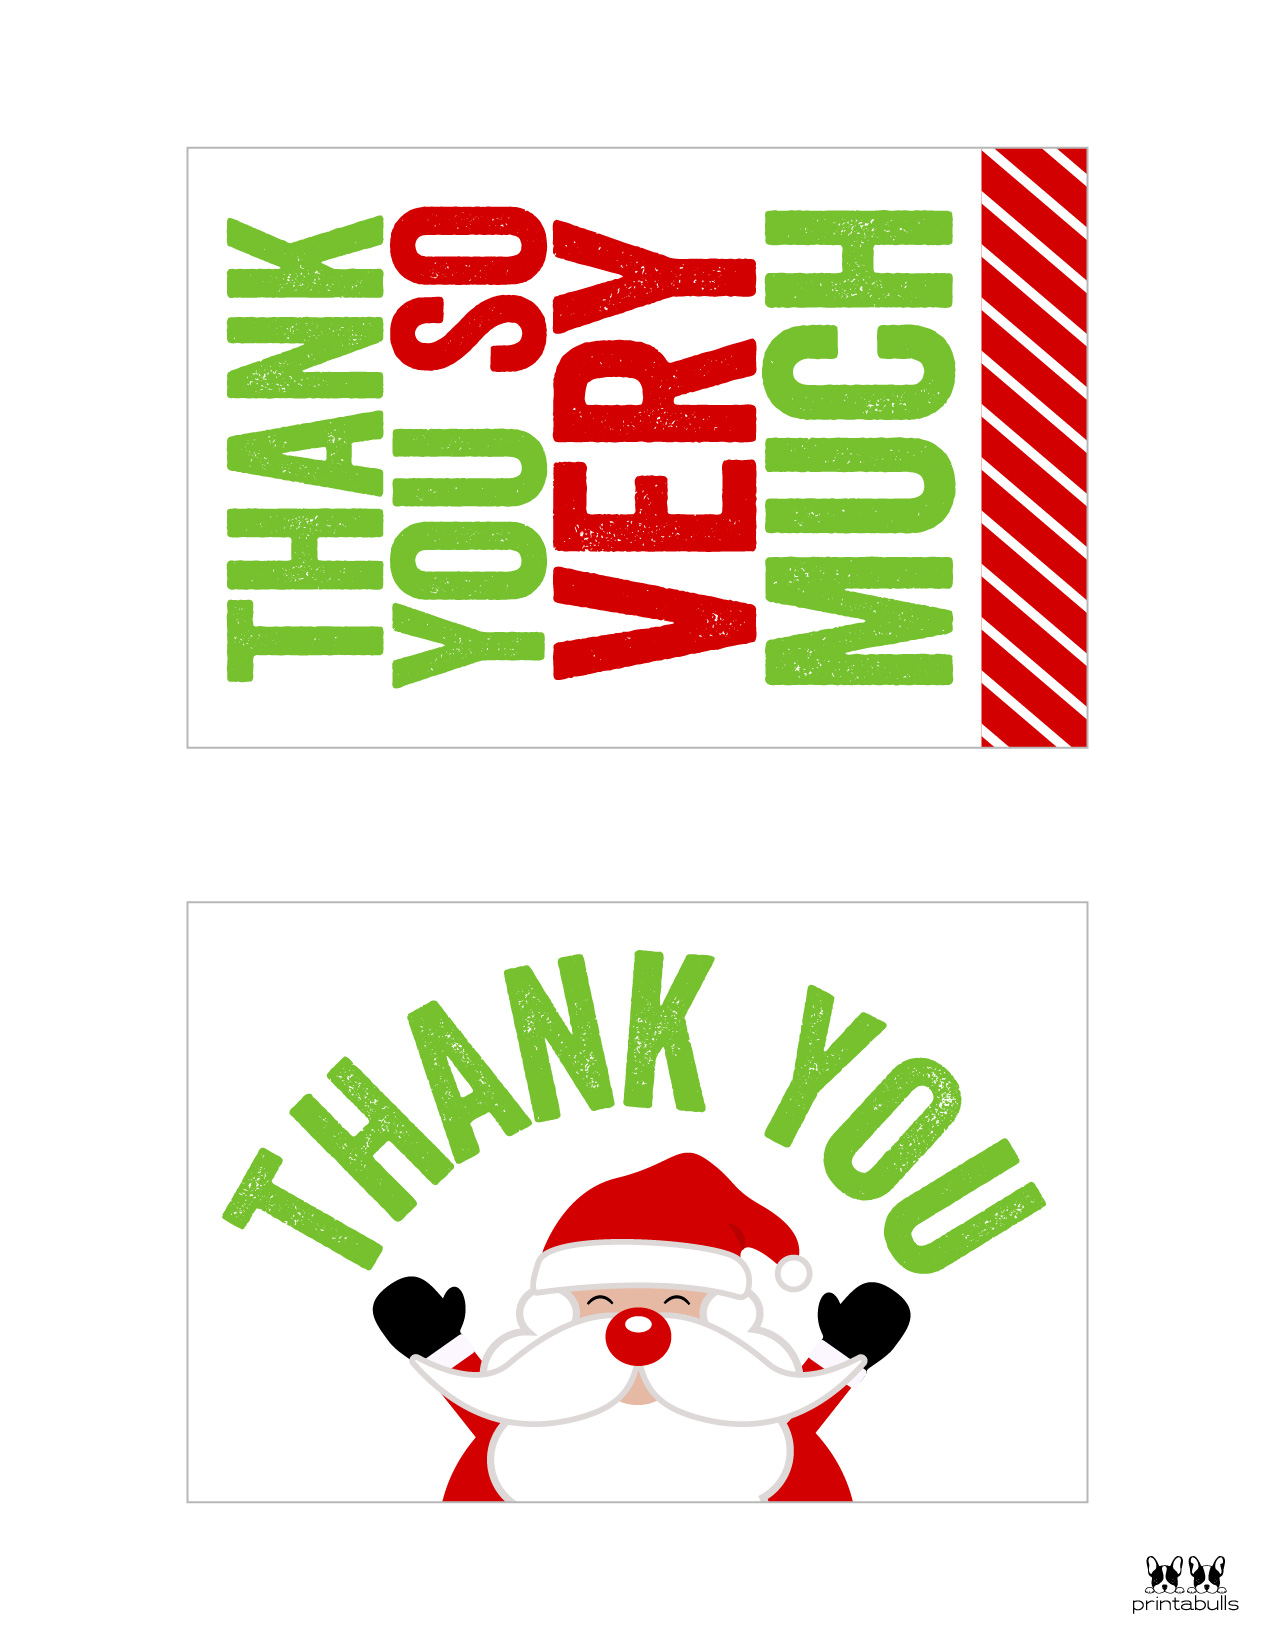 christmas-thank-you-cards-25-free-printable-cards-printabulls